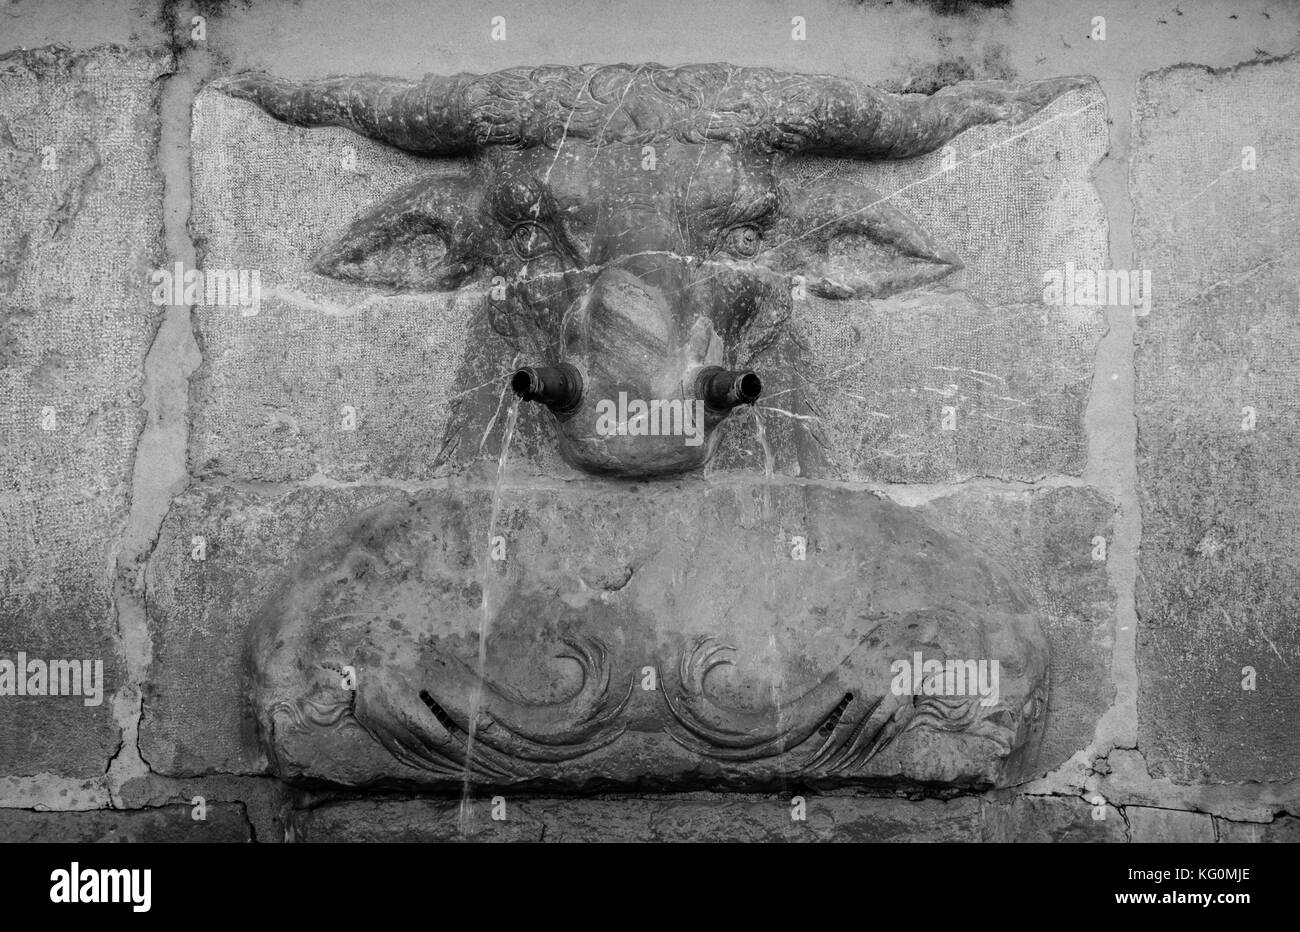 Fontaine bull close up en noir et blanc Banque D'Images